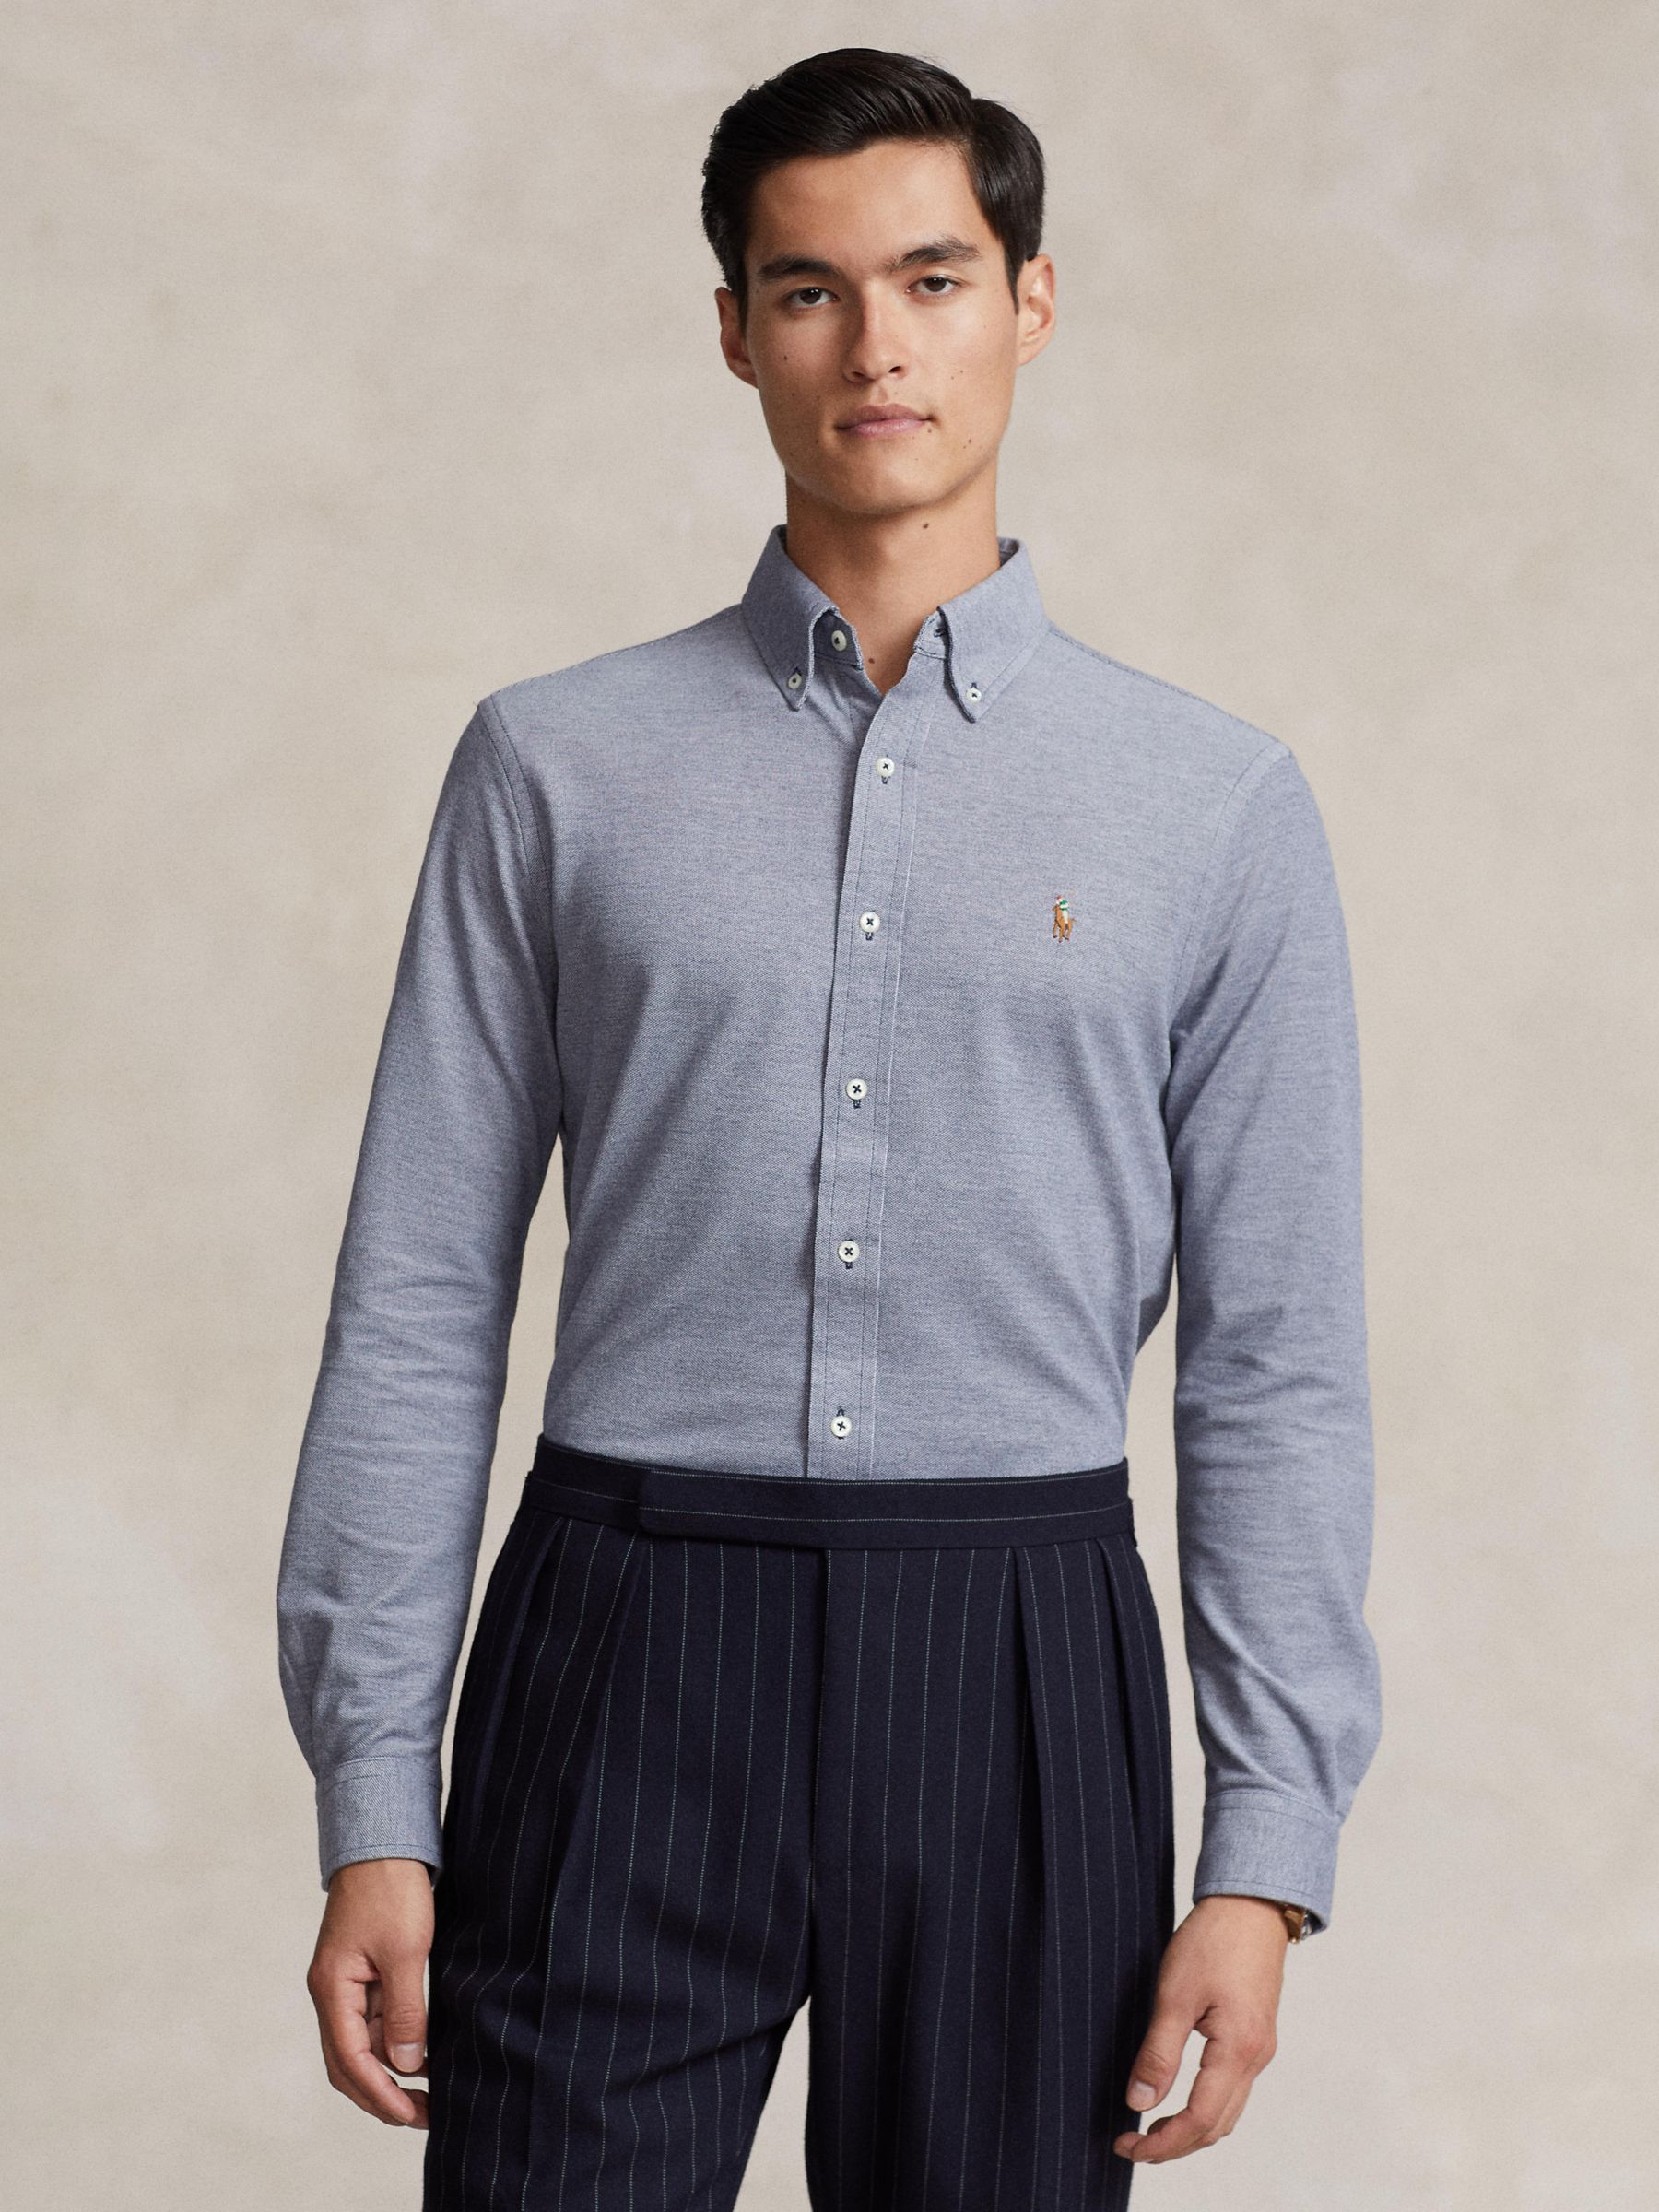 Ralph Lauren Knit Oxford Shirt, Navy, M